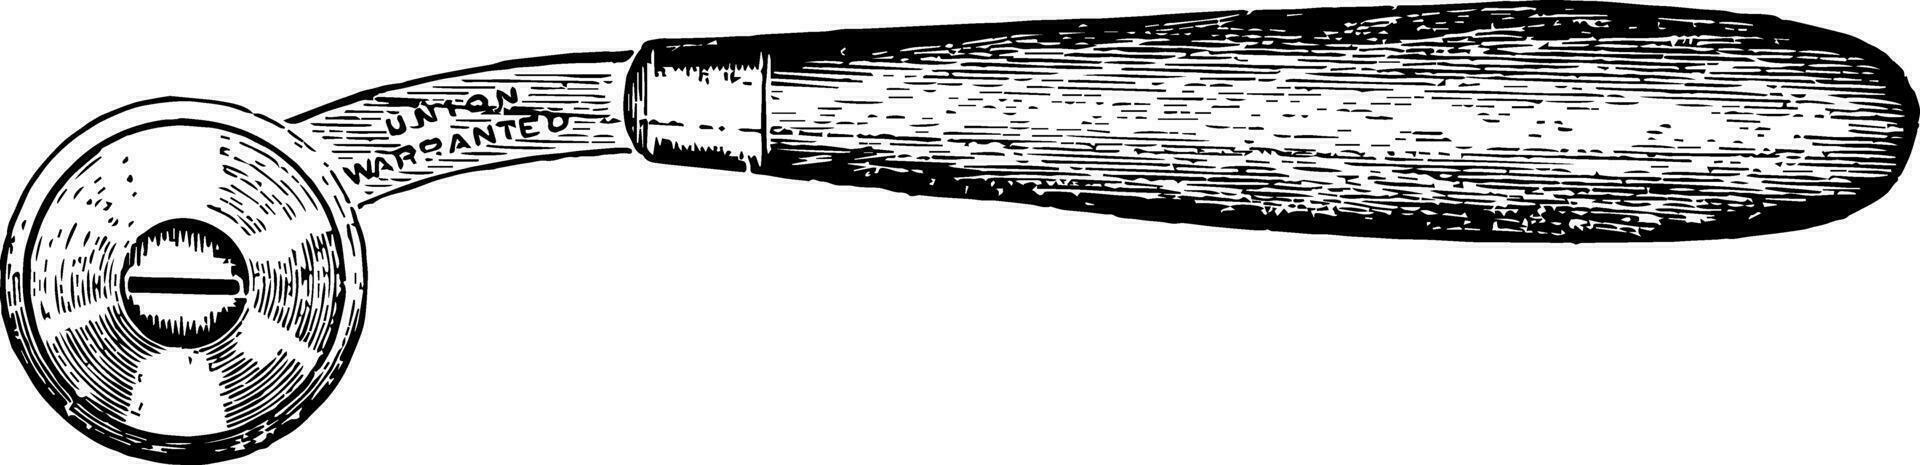 porte-papier roue couteau ancien illustration. vecteur